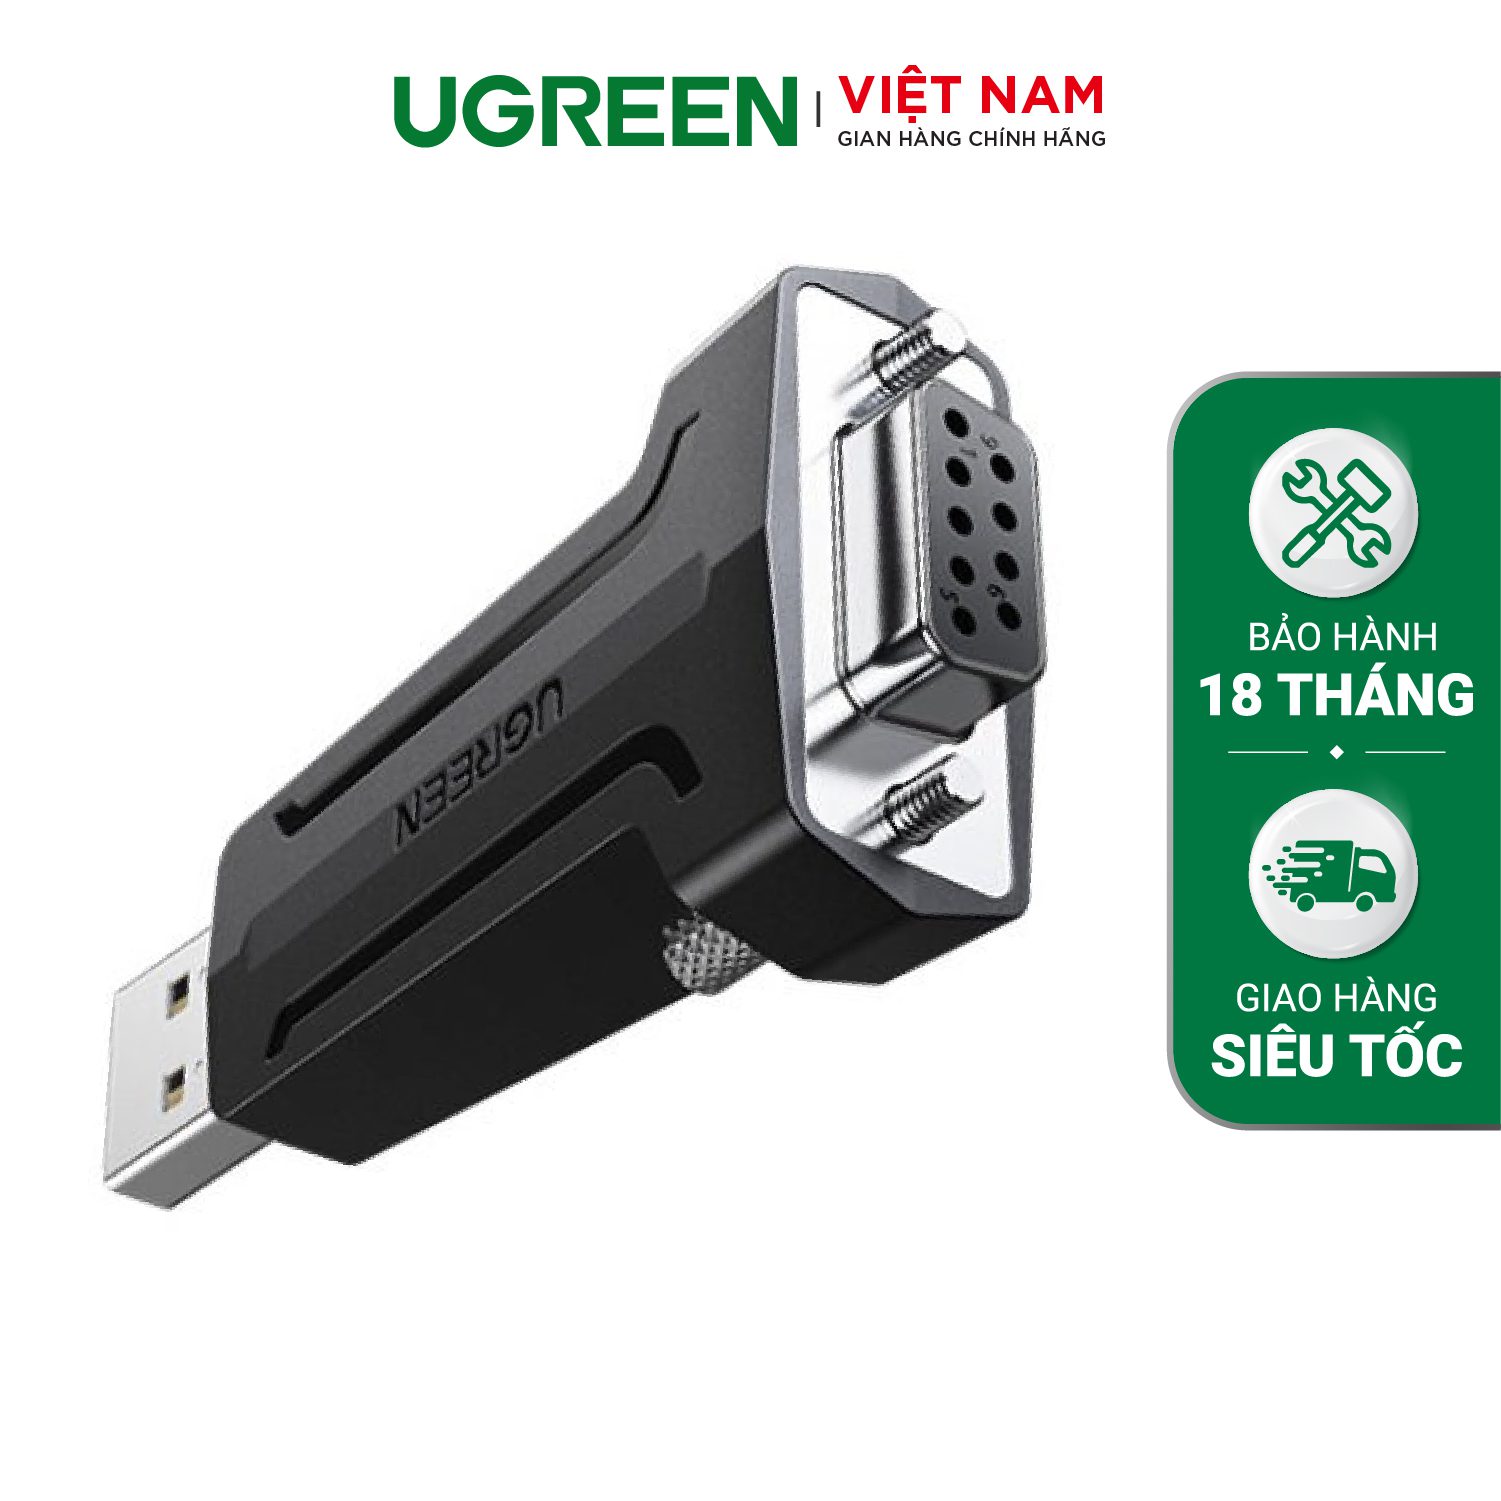 Đầu chuyển USB 2.0 sang COM DP9 RS 232 UGREEN 80111 - Tốc độ truyền 1Mbps - Đầu mạ Niken cao cấp – Ugreen Việt Nam